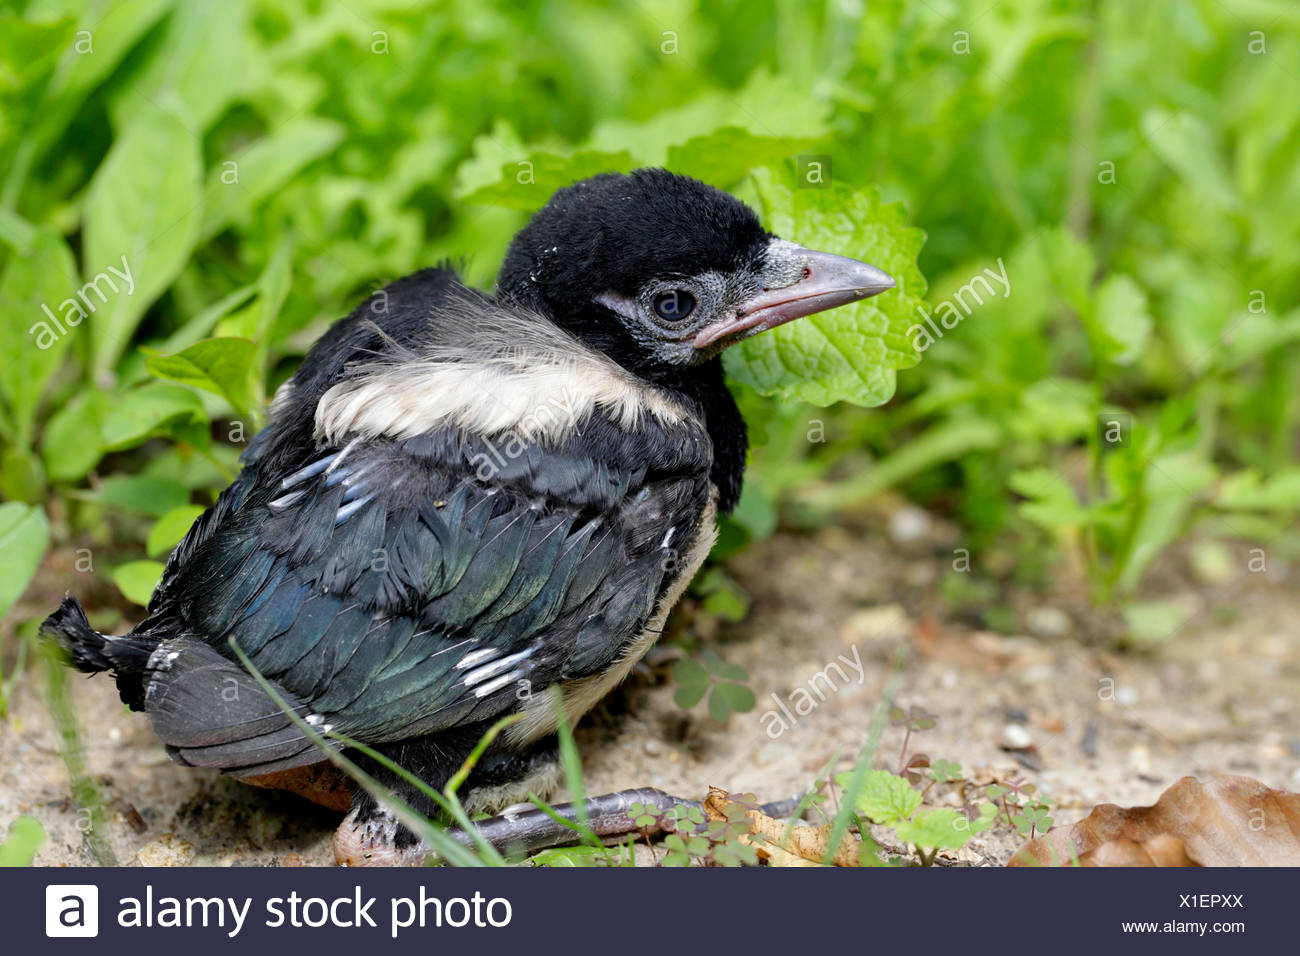 Nero Fatturati Gazza Pica Pica Uccello Giovane Seduto A Terra Annidata In Germania In Baviera Foto Stock Alamy